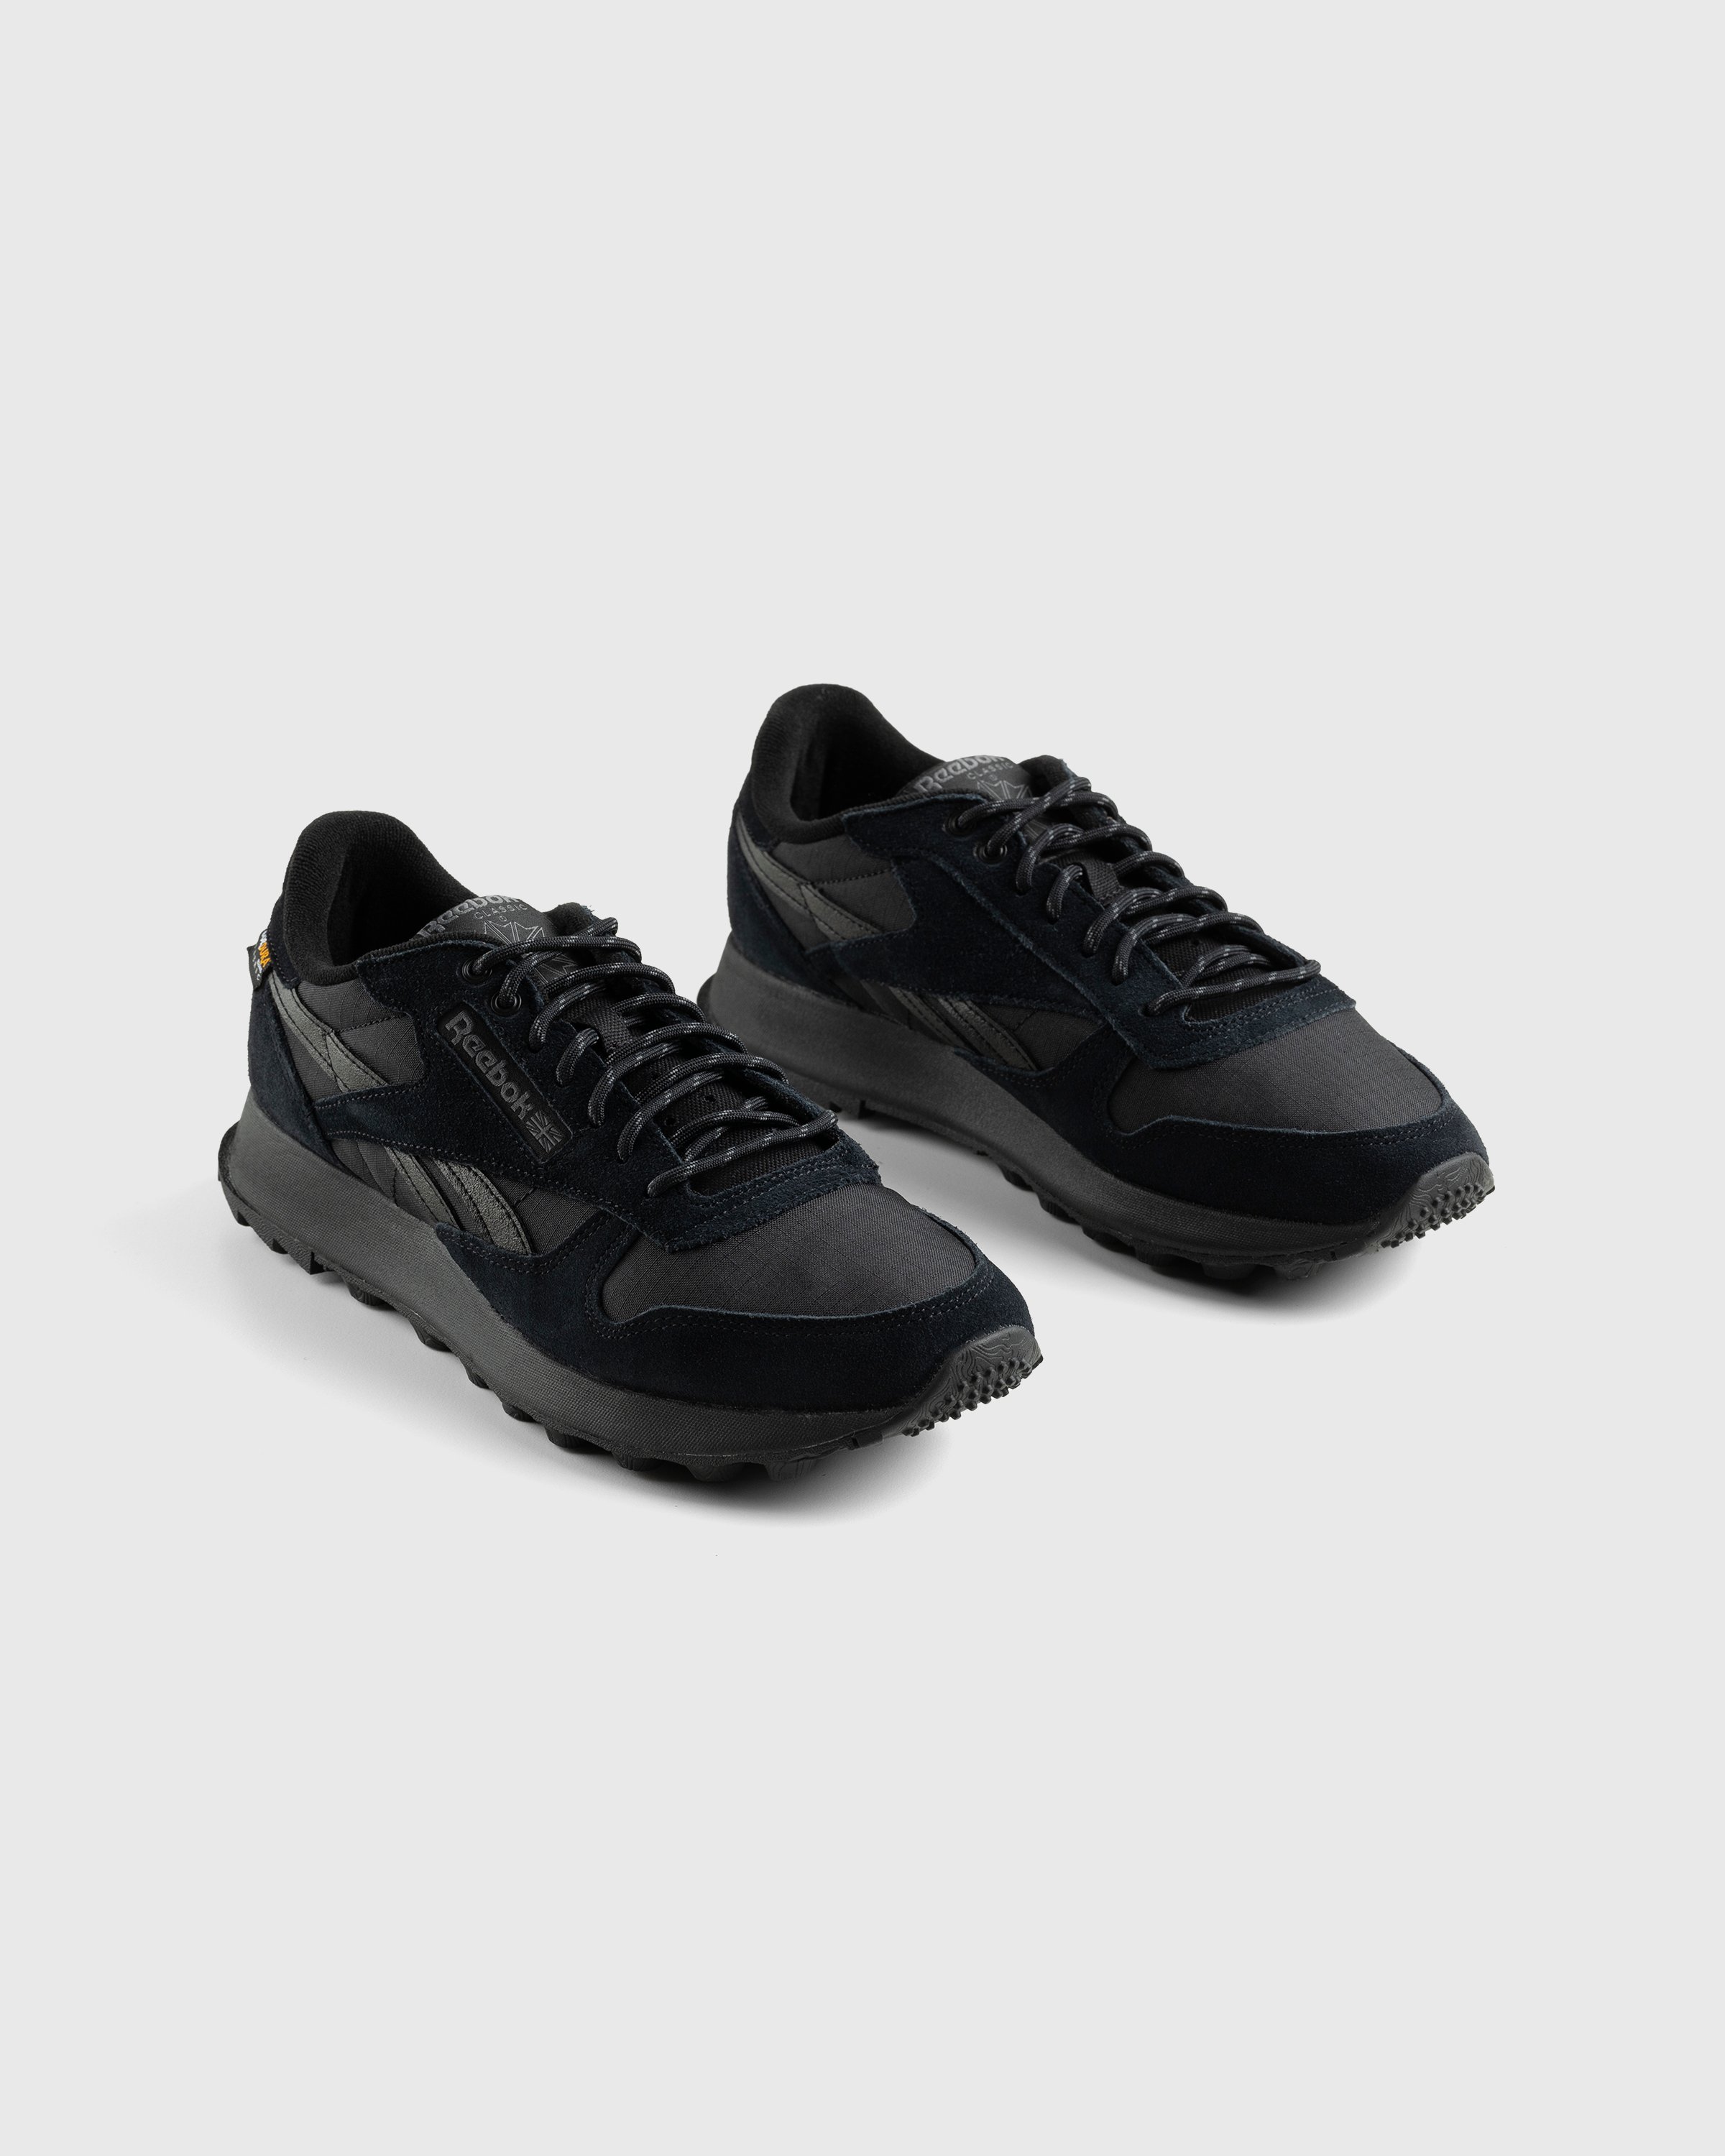 Reebok - LX2200 Black - Footwear - Black - Image 3